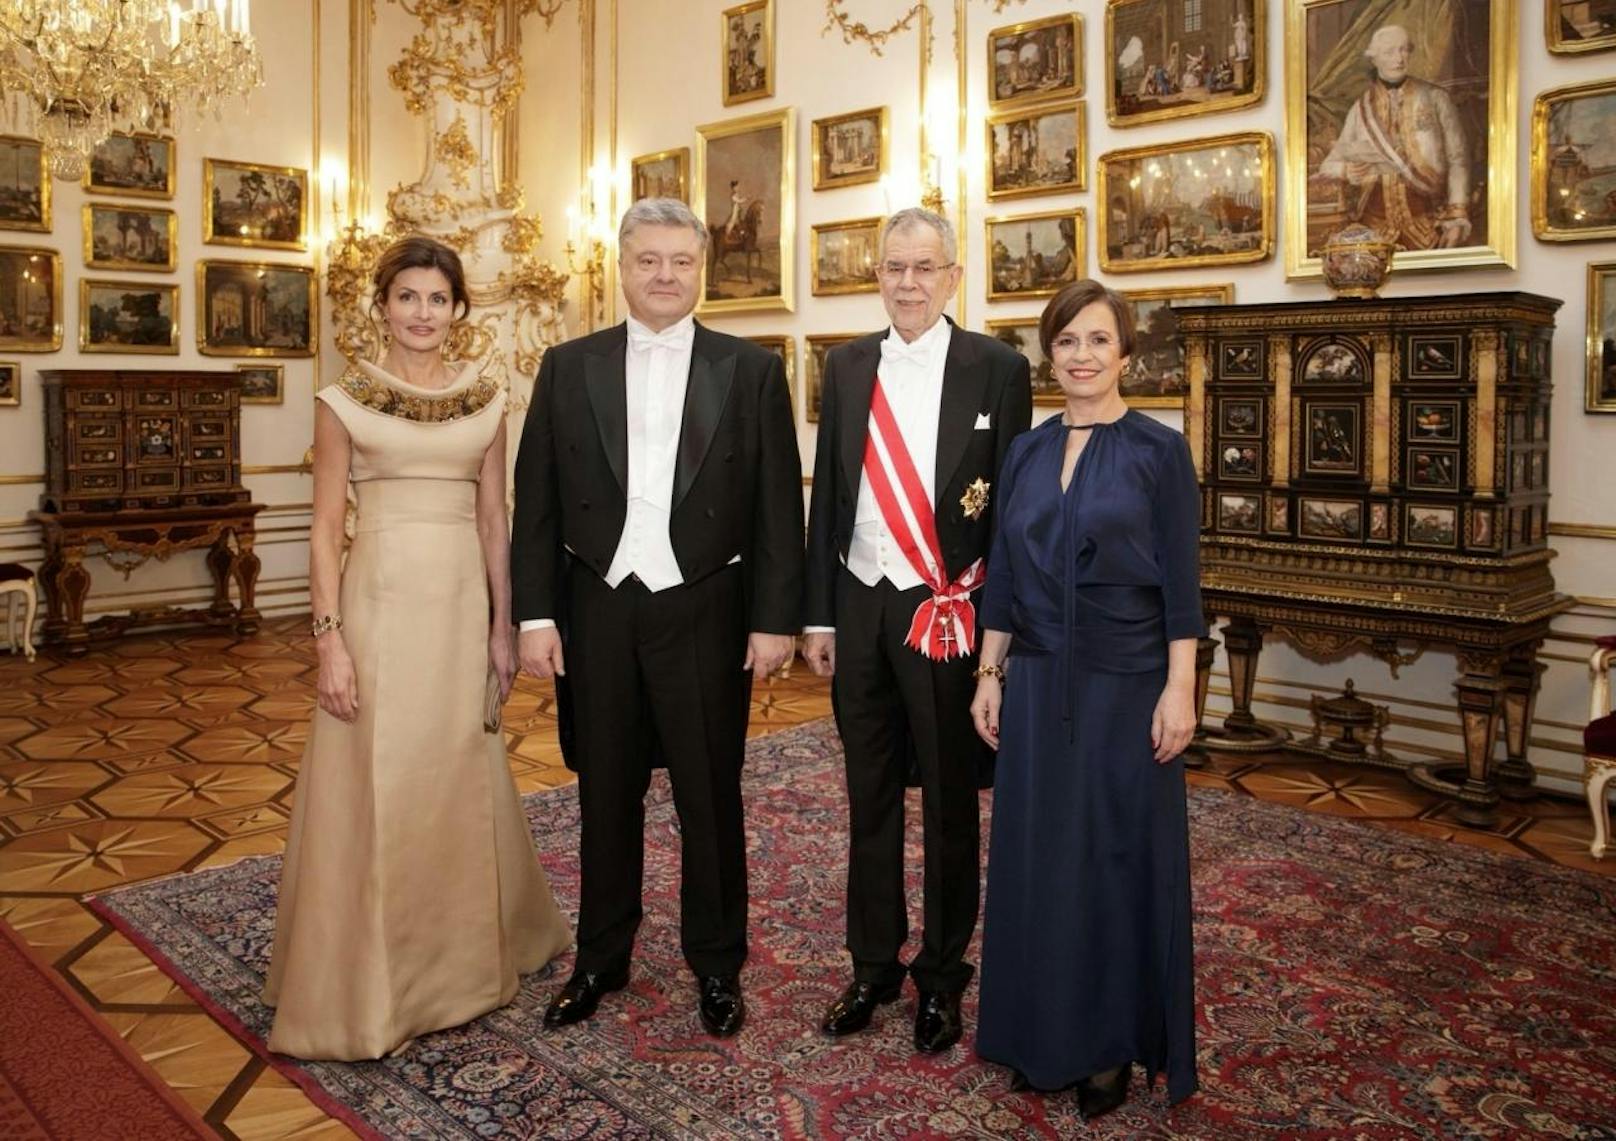 Alexander Van der Bellen und Doris Schmidauer mit dem ukrainischen Staatschef Petro Poroschenko und dessen Frau.